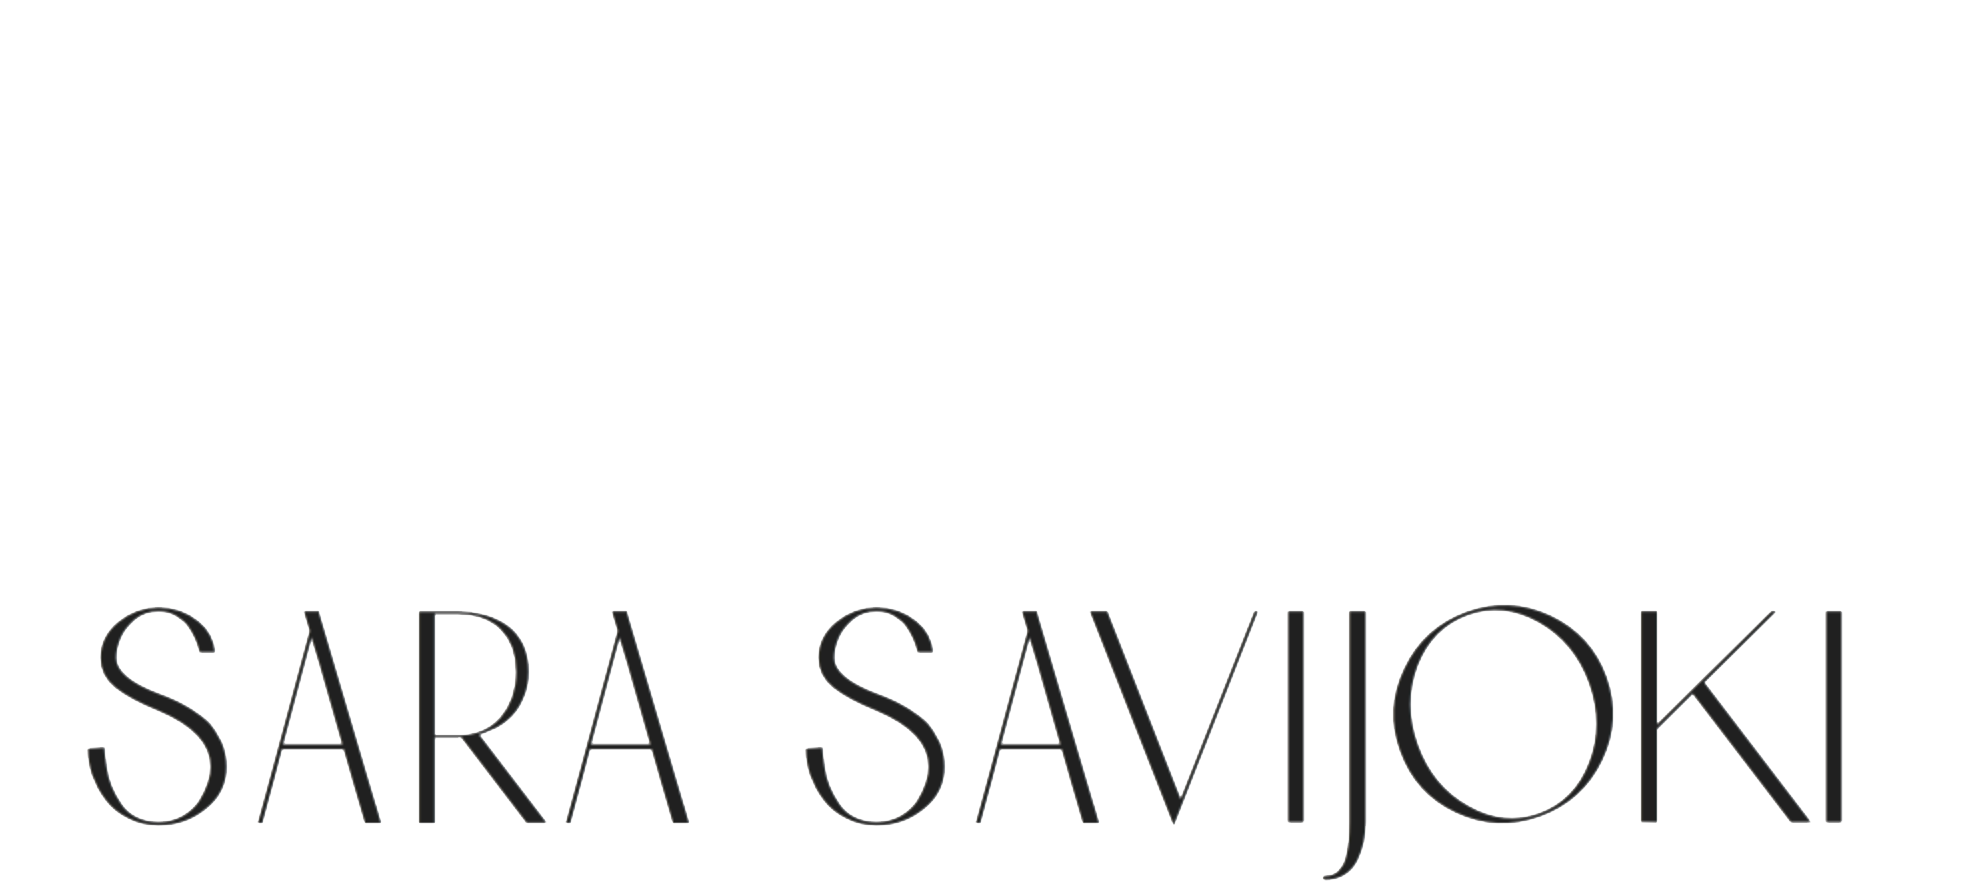 Sara Savijoki